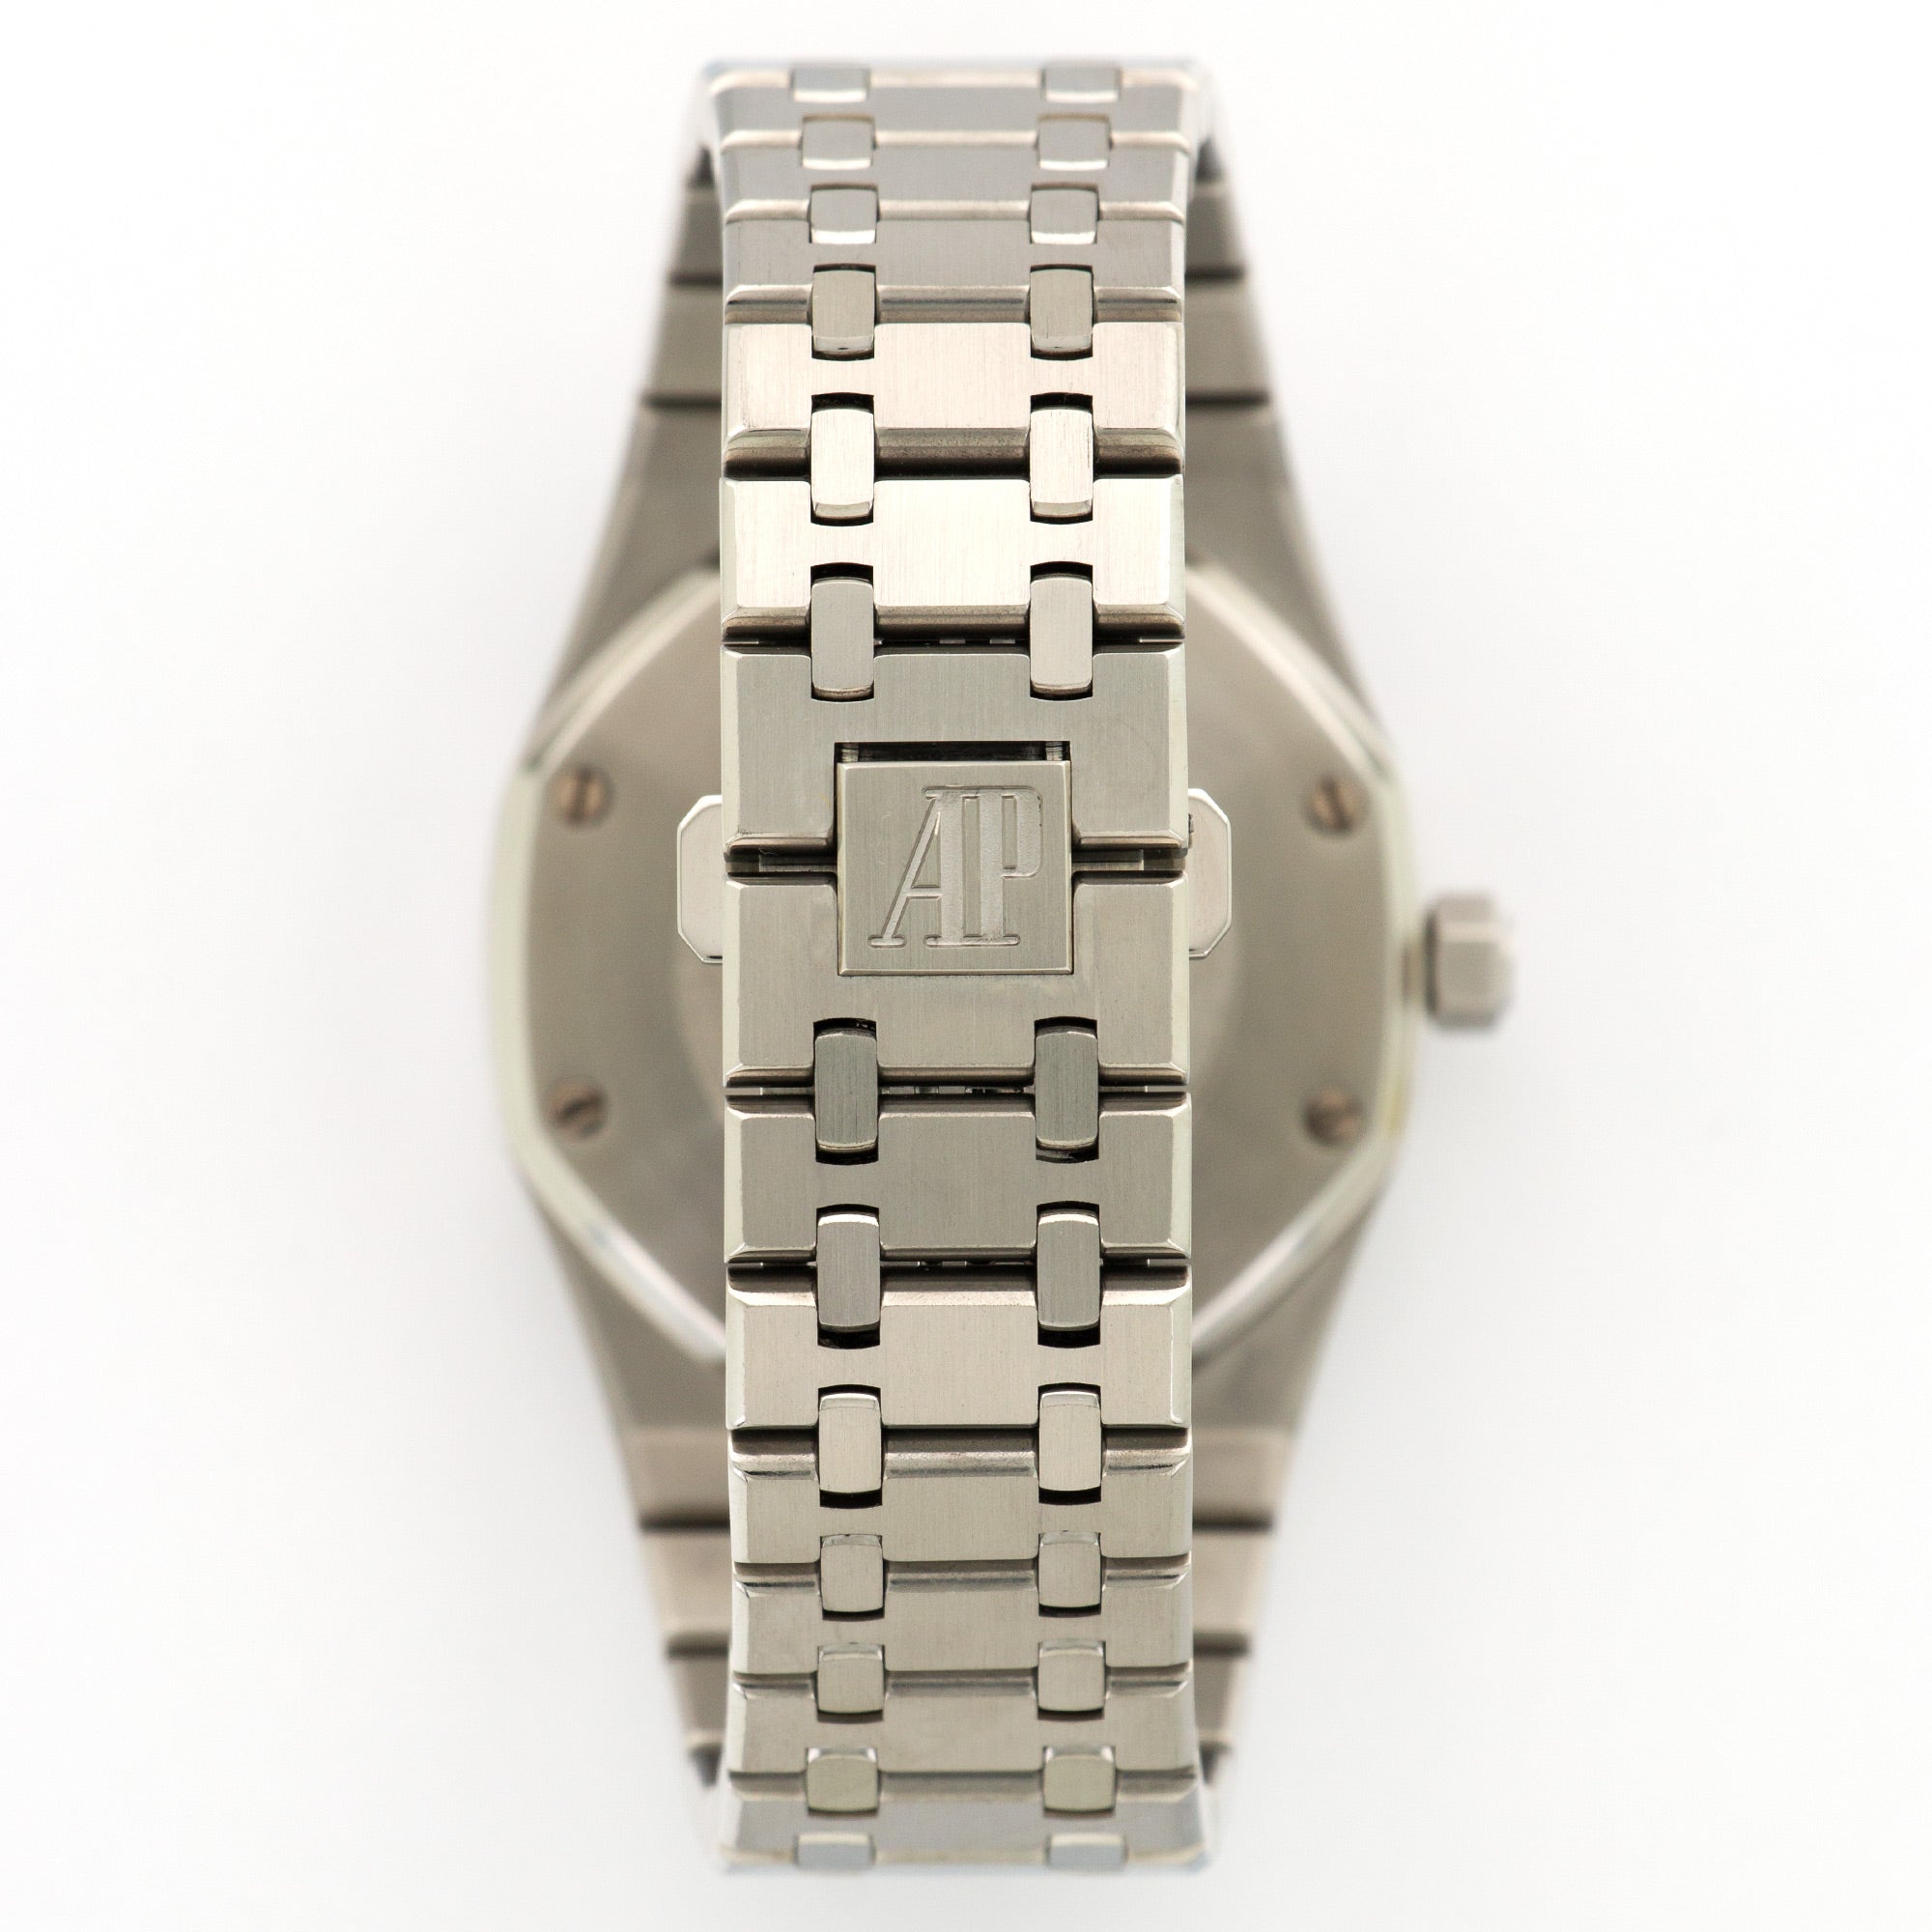 Audemars Piguet - Audemars Piguet Royal Oak Dual Time Watch Ref. 26120 - The Keystone Watches